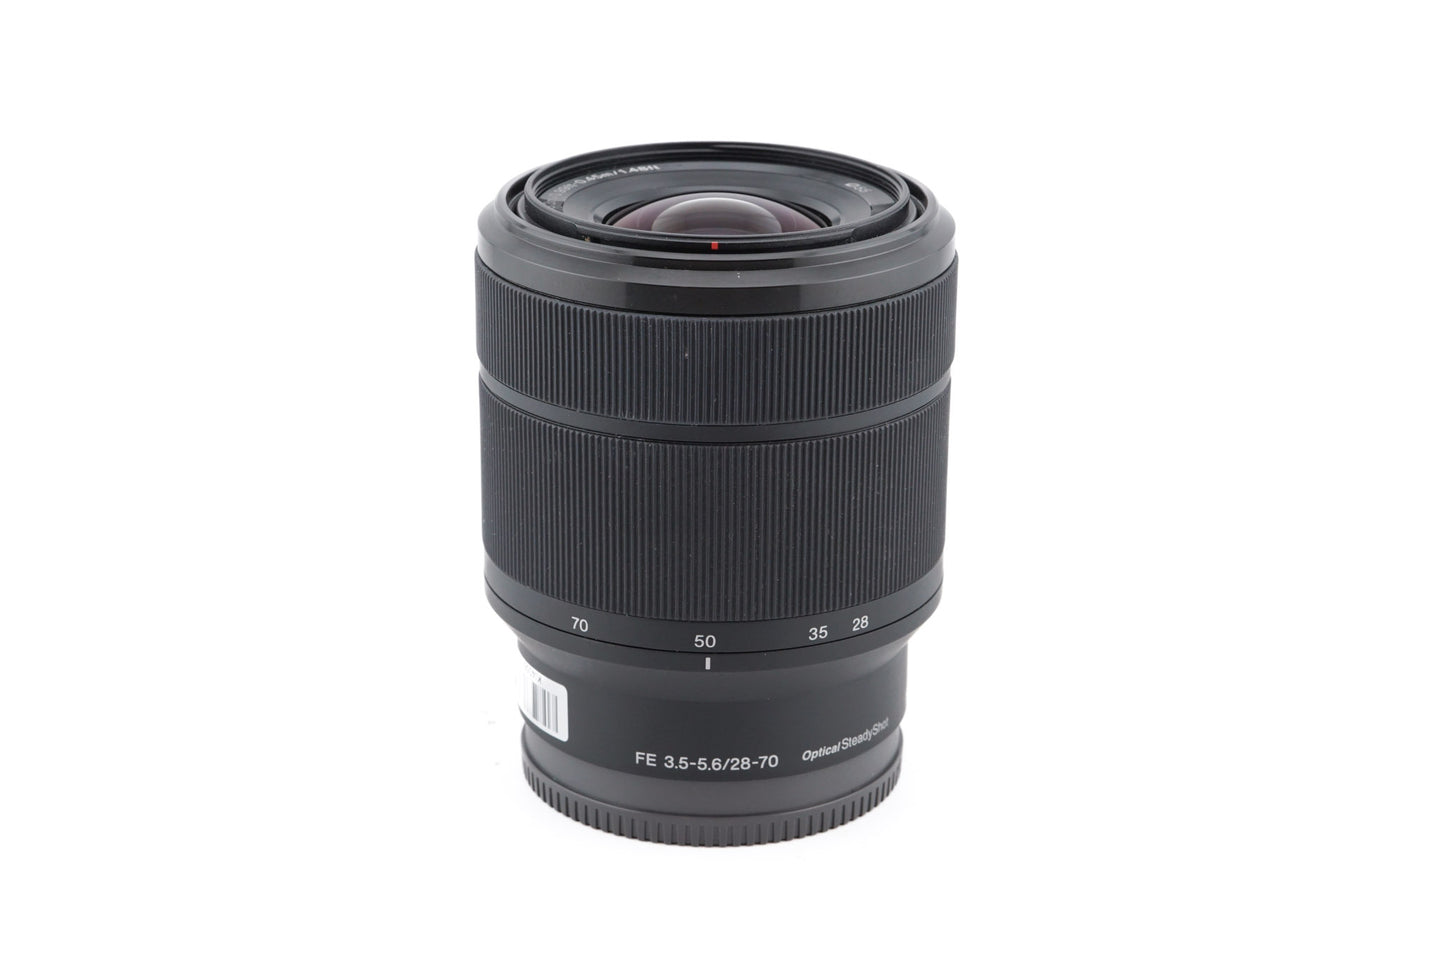 Sony 28-70mm f3.5-5.6 OSS - Lens